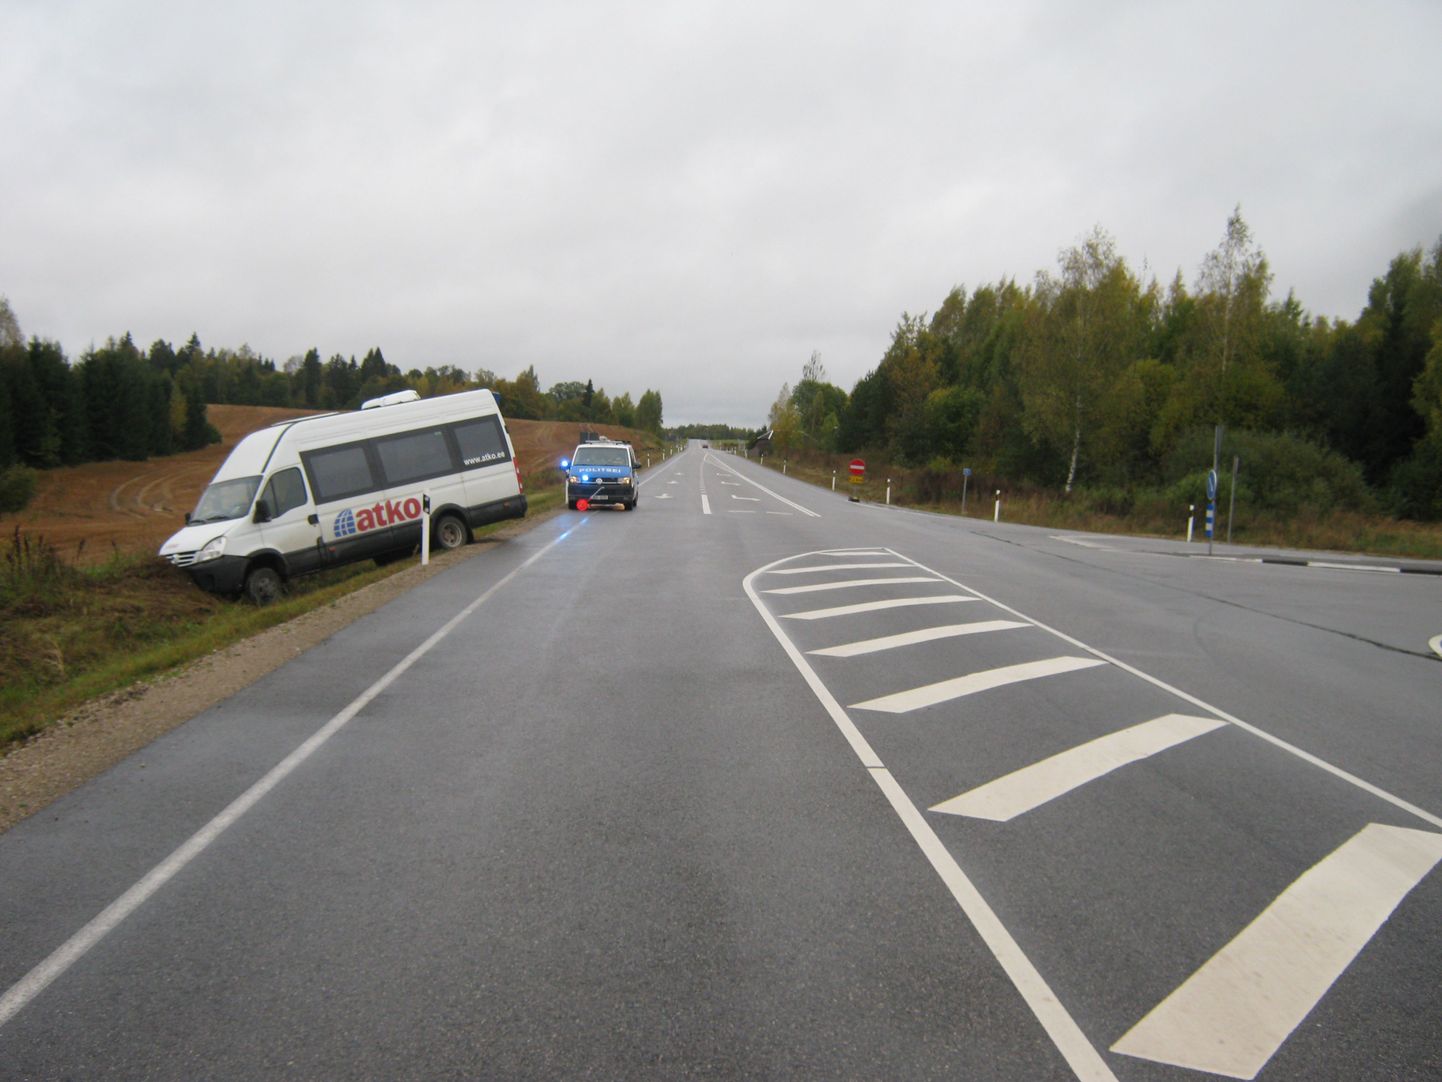 Õnnetus juhtus Võru–Valga maantee ja Lüllemäele viiva tee ristmikul. Bussijuhi sõnul lakkasid masina pidurid korralikult funktsioneerimast, kuigi ta tunnistas, et ühtlasi kiirustas liialt.